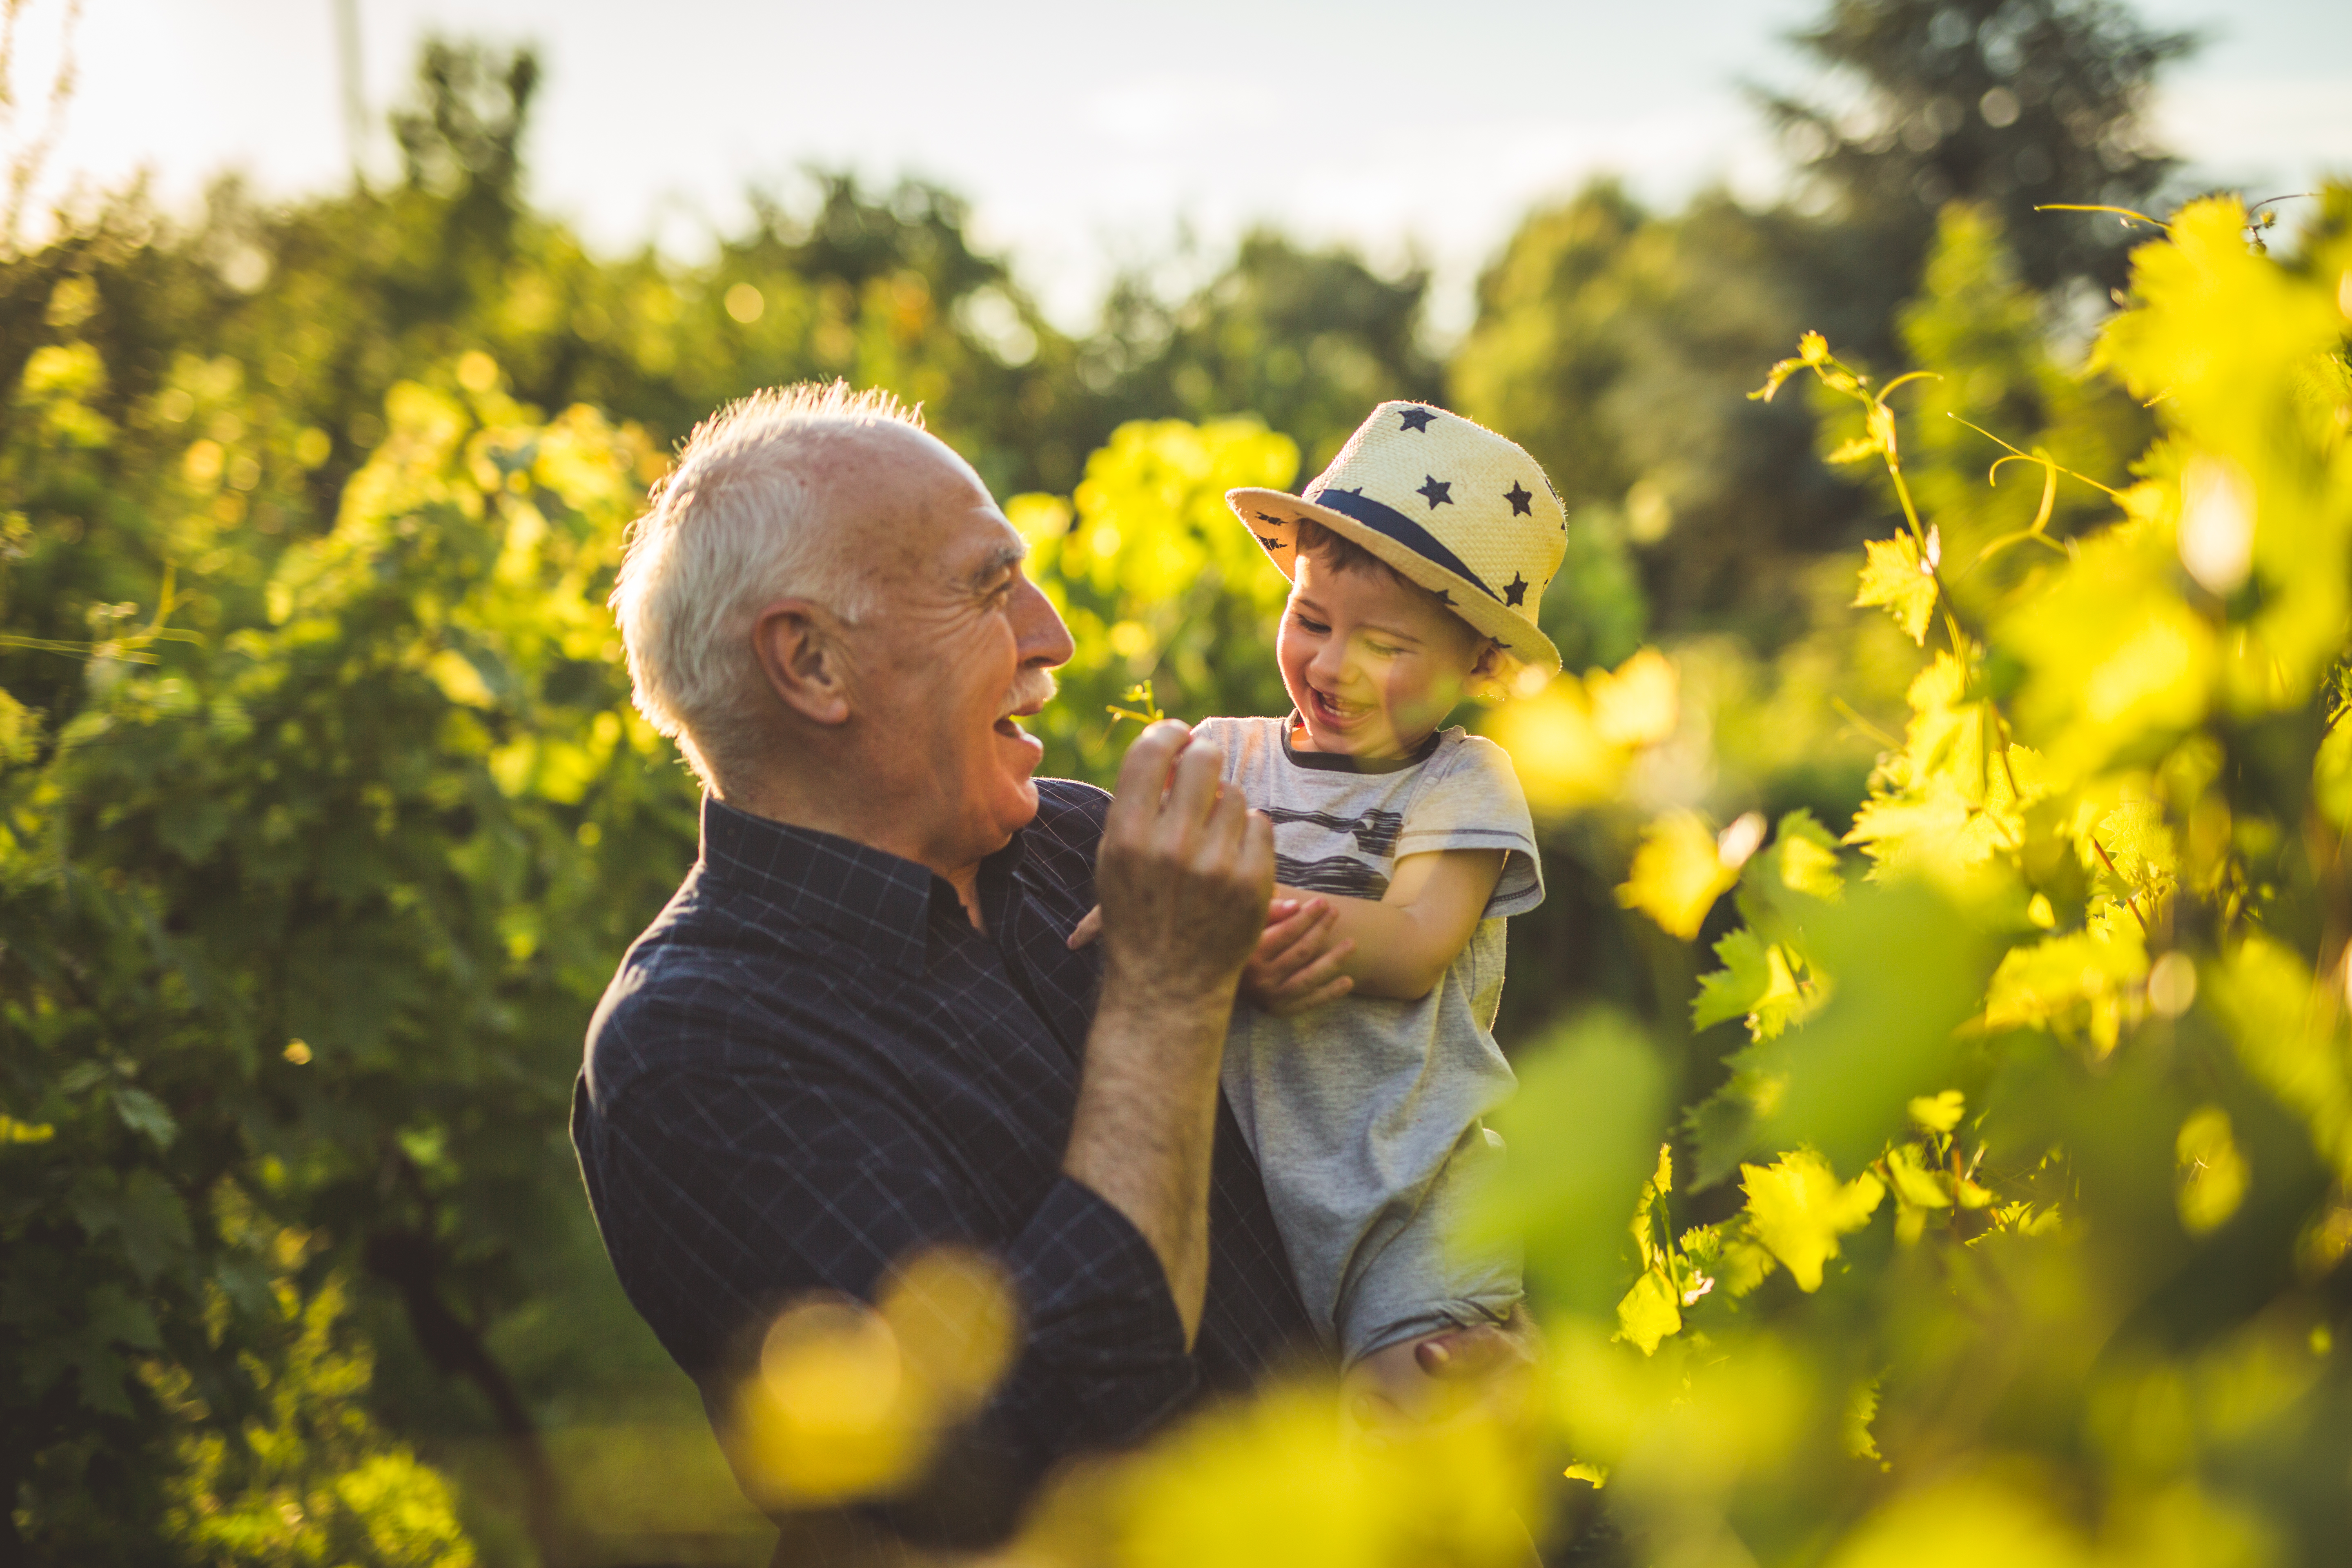 Ein älterer Mann hält lächelnd ein lächelndes Kind auf dem Arm, sie sehen sich gegenseitig fröhlich an. Beide stehen an einem sonnigen Tag in einem Feld und sind umgeben von Grün. Foto: Milan Stojkovic via Getty Images